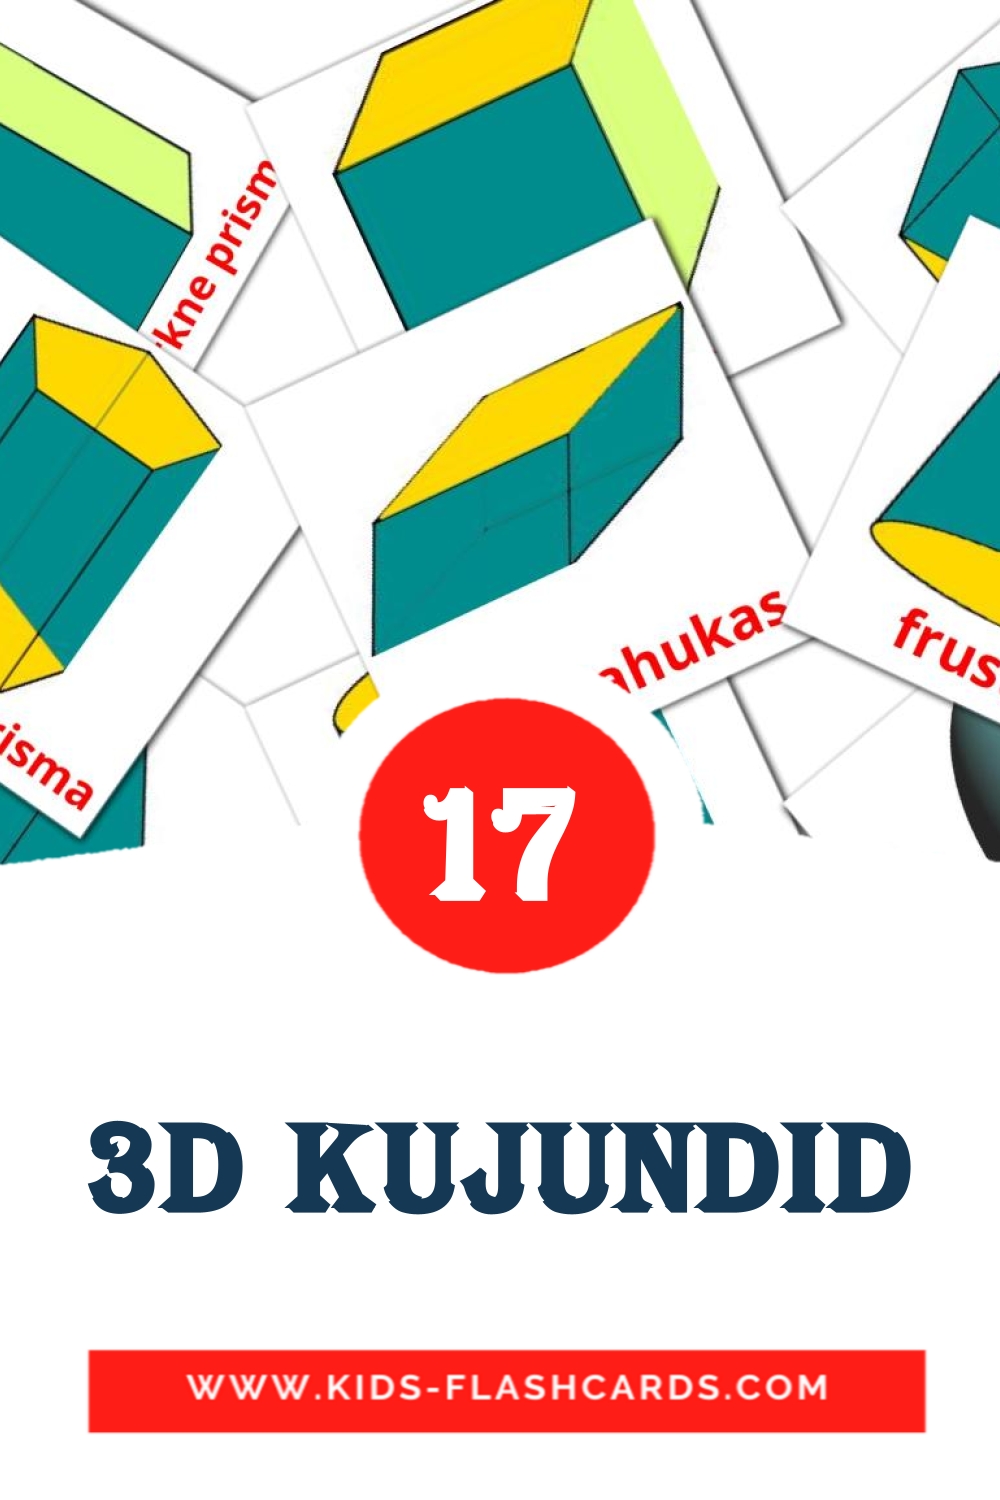 3D kujundid на эстонском для Детского Сада (17 карточек)